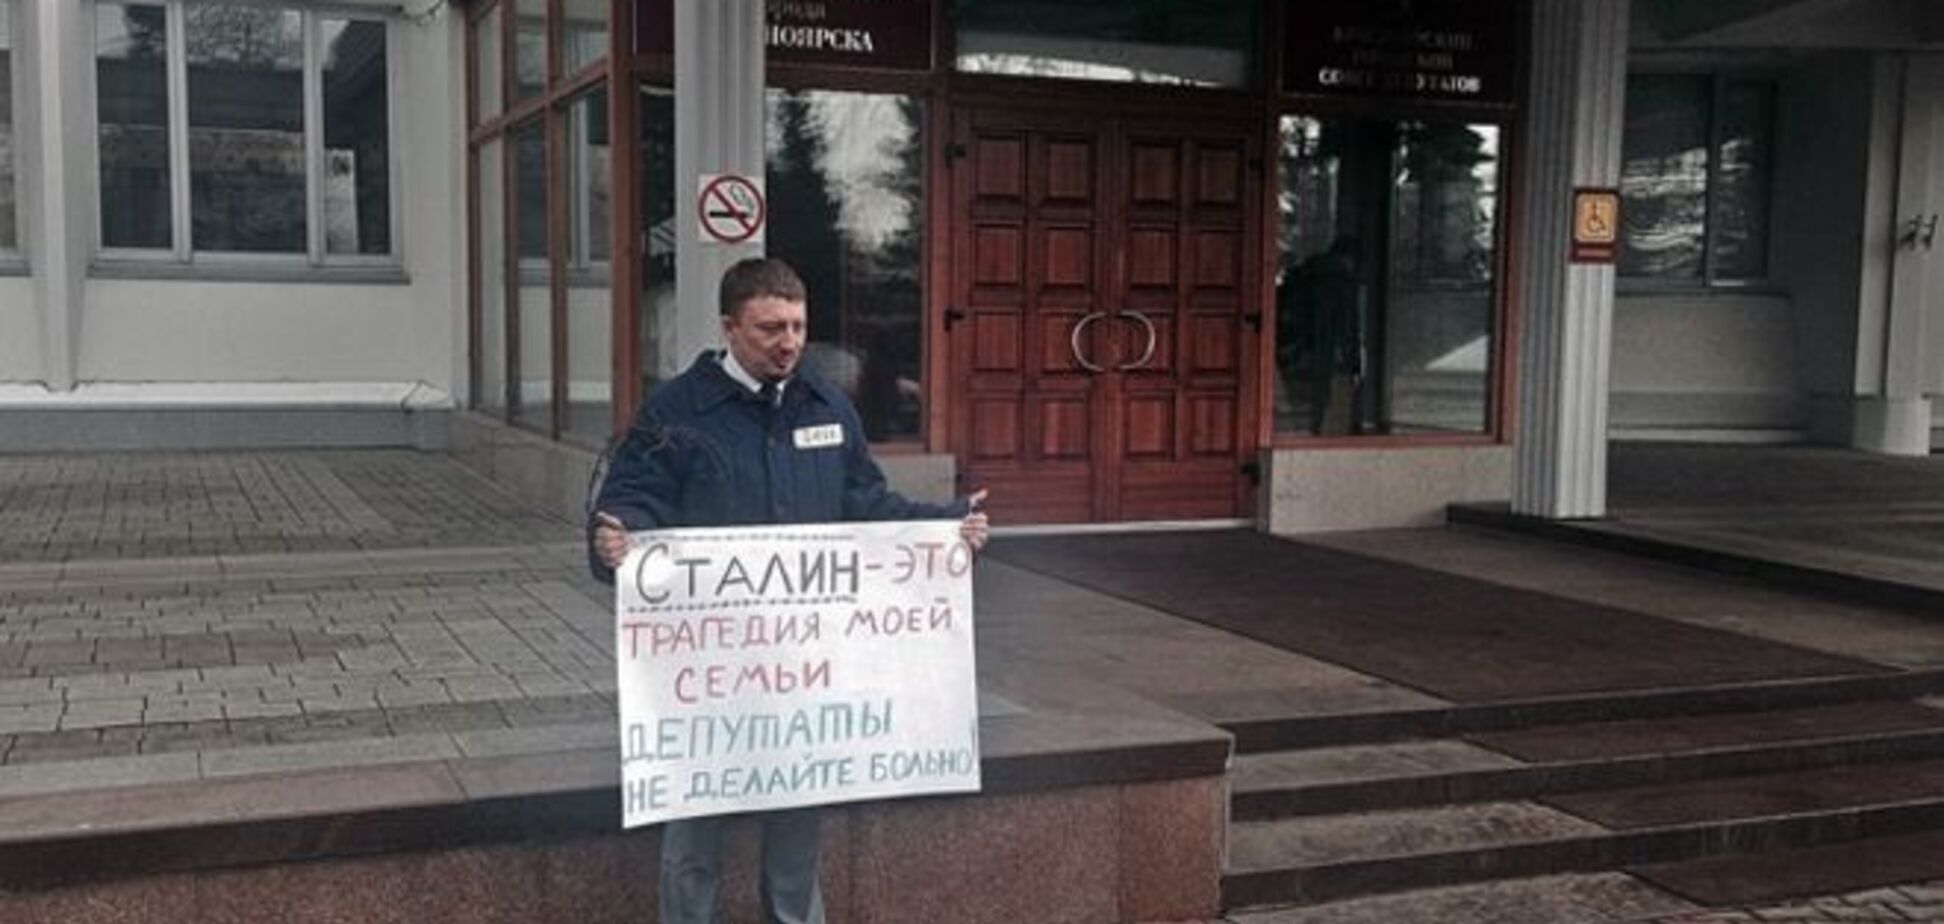 В Красноярске бизнесмен в ватнике пикетировал мэрию из-за памятника Сталину